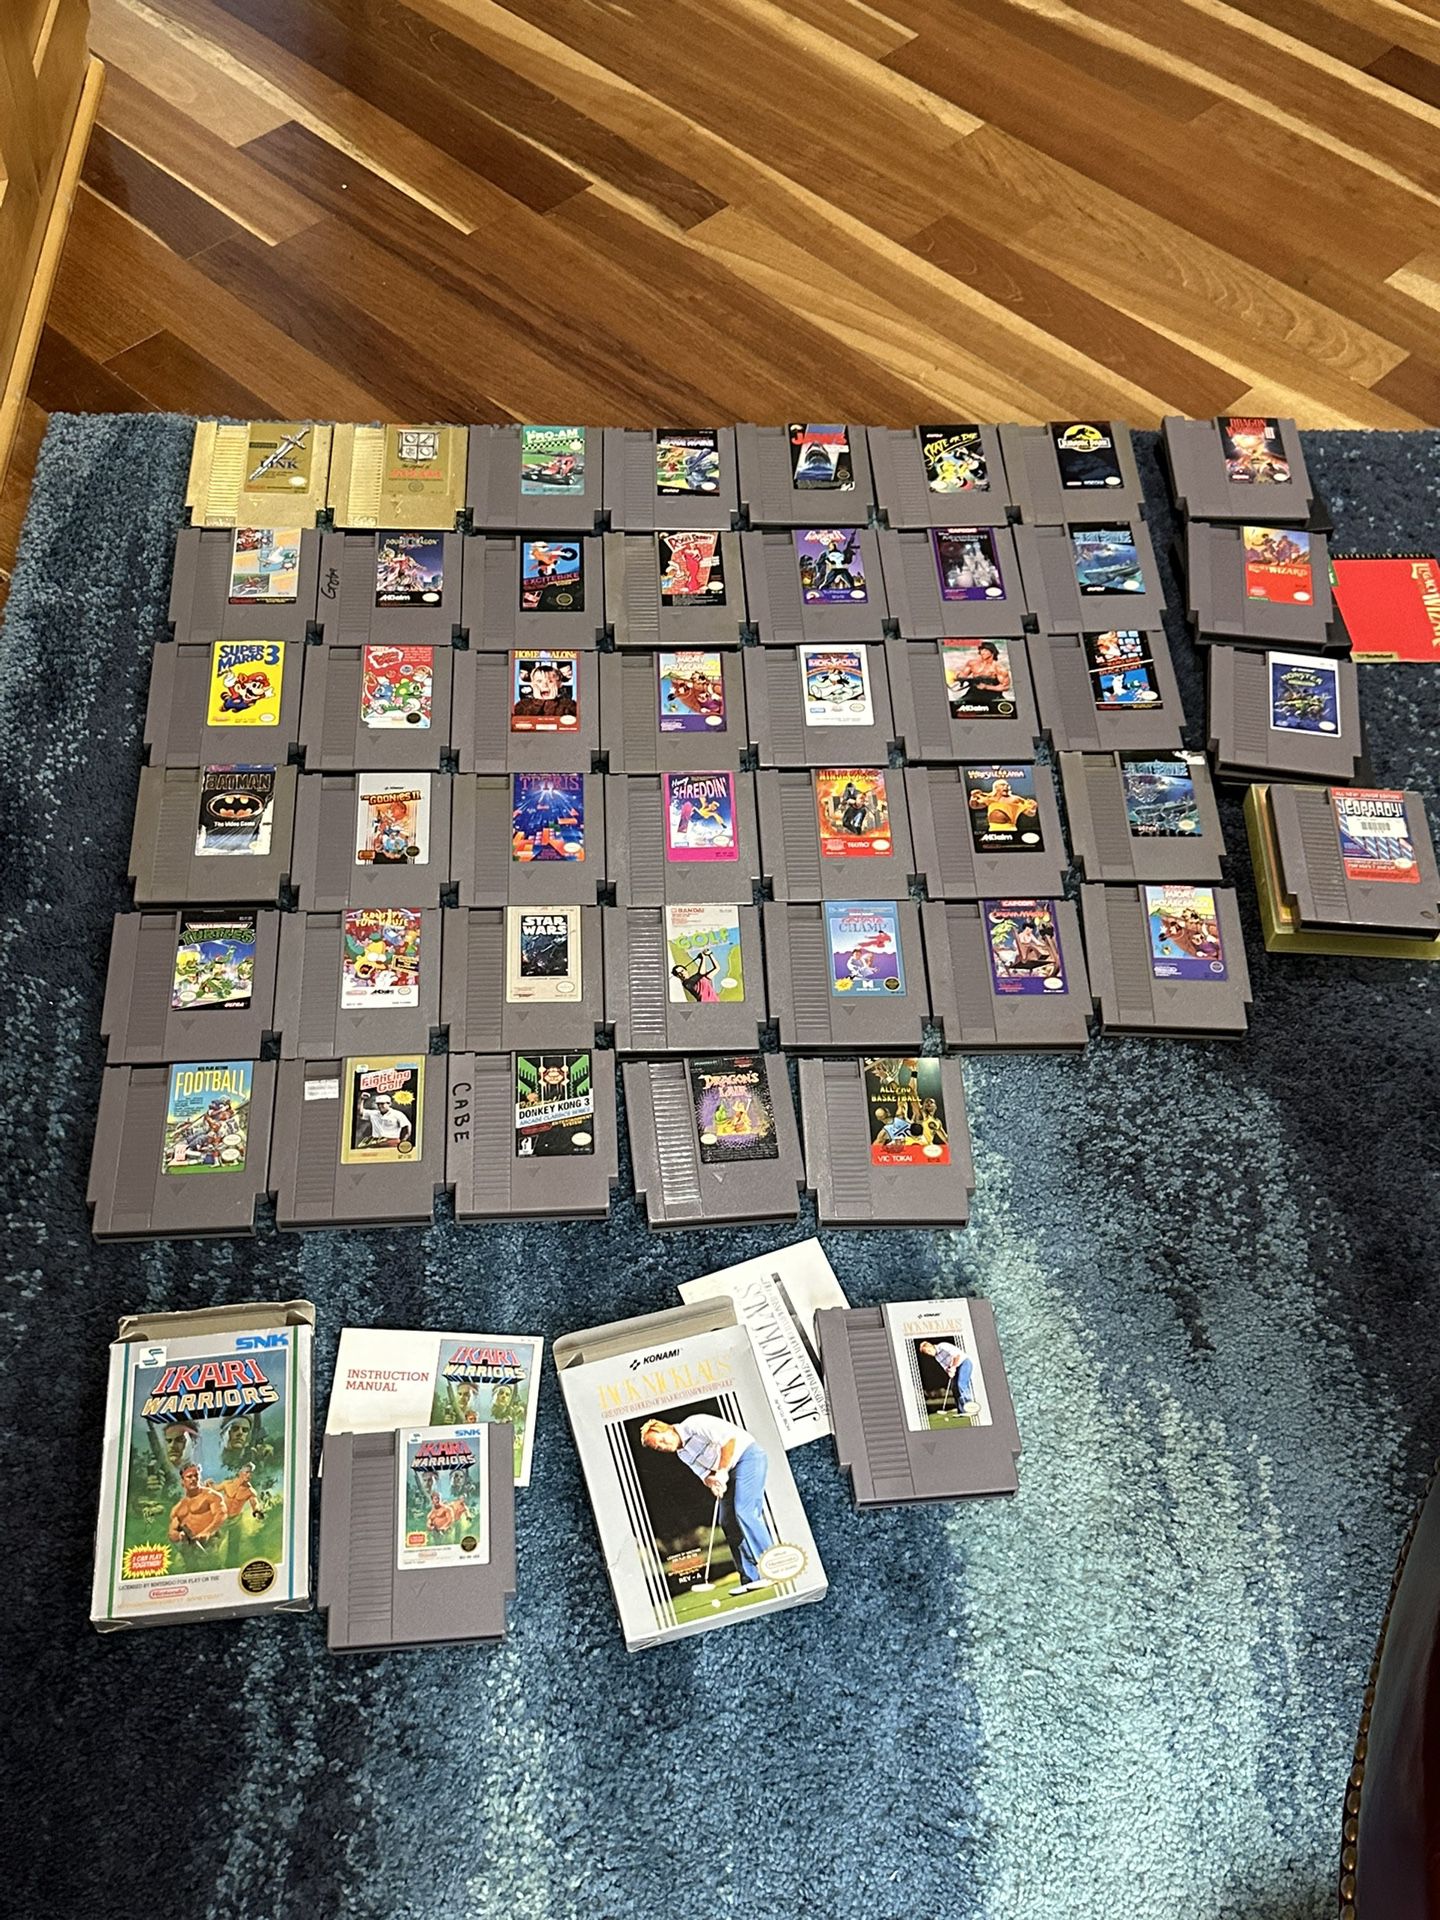 Original Nes Nintendo Games $10-125 Each